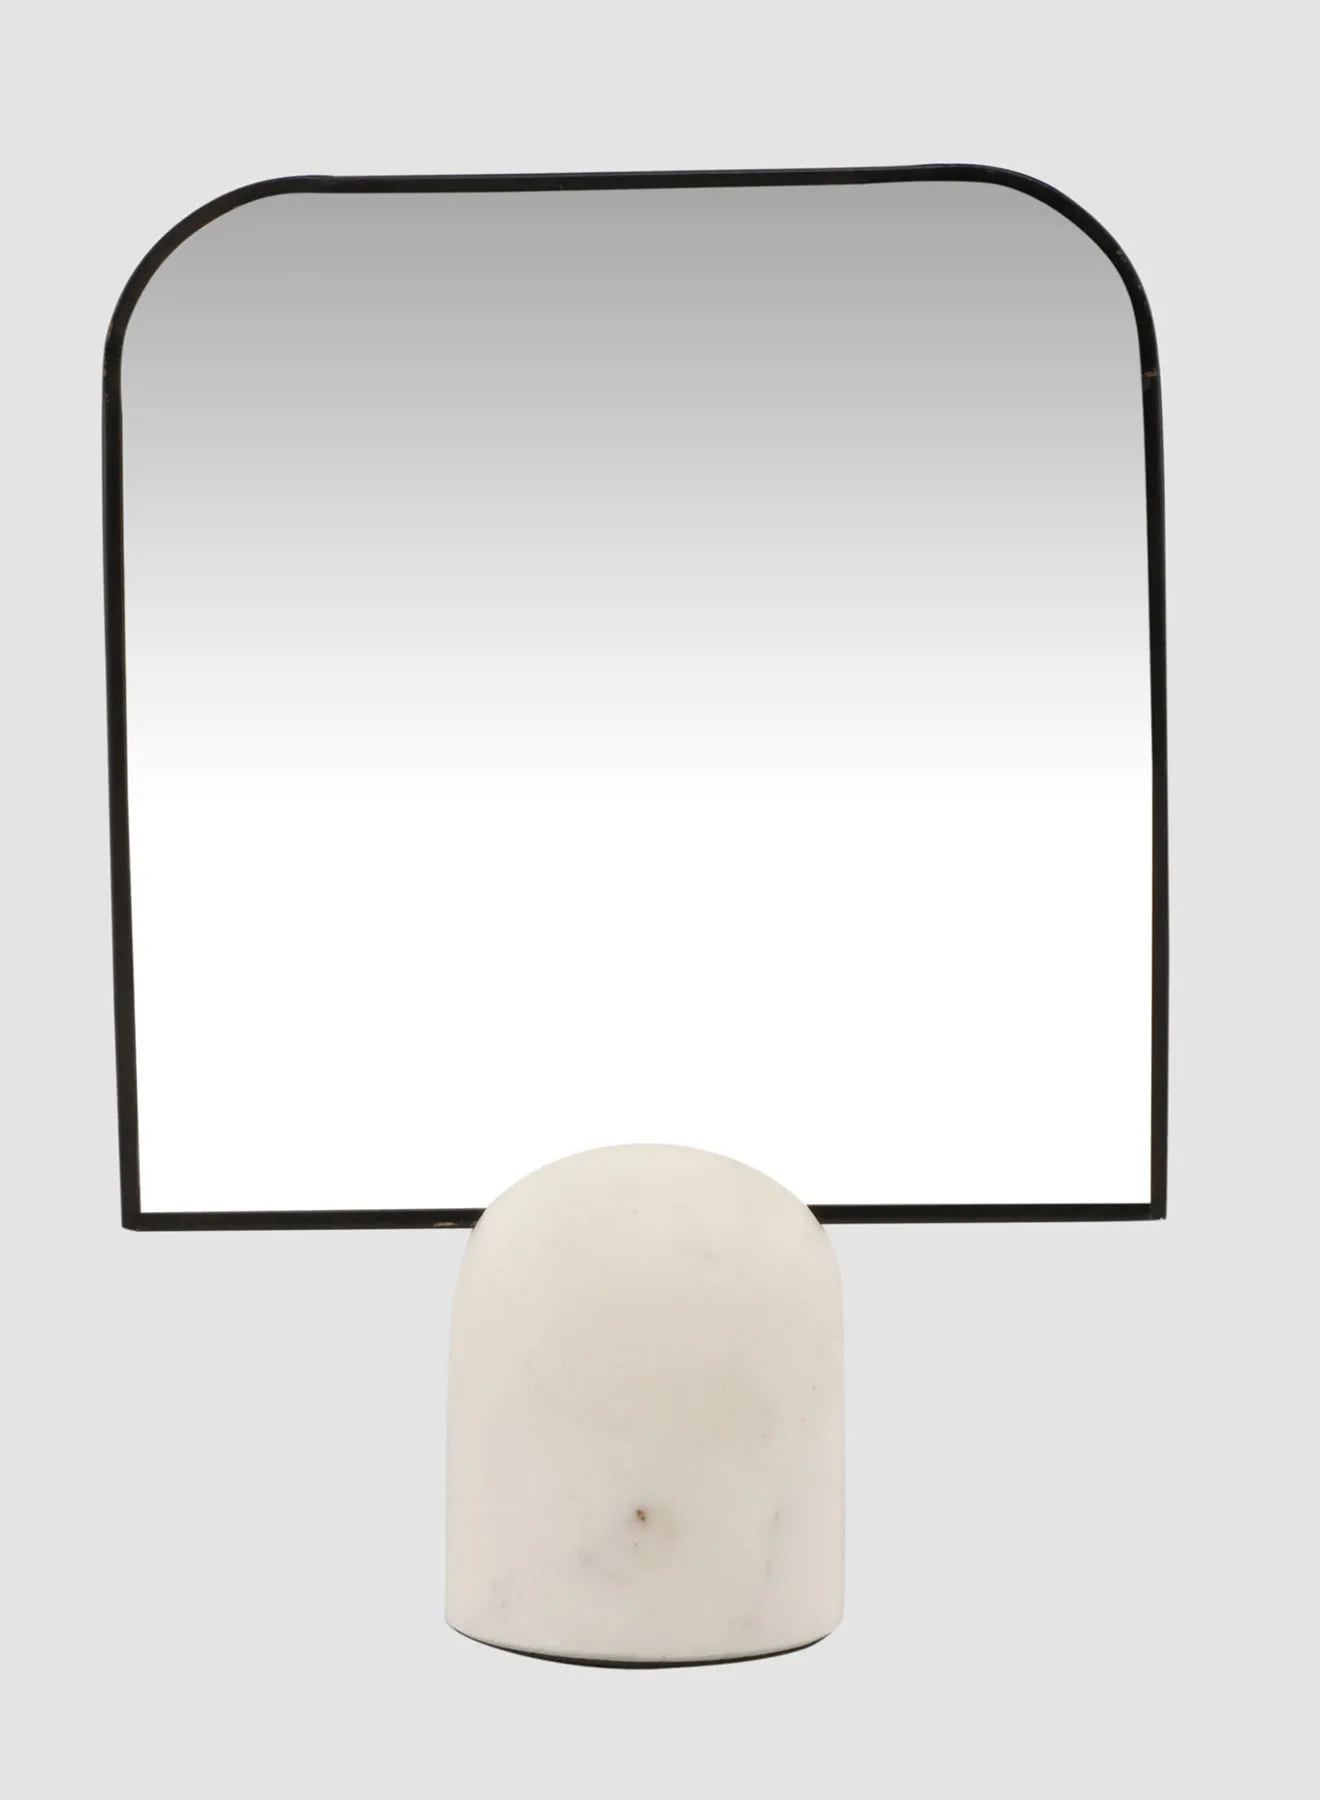 مرآة طاولة بتصميم عصري من سويتش ، مادة فريدة من نوعها ذات جودة فاخرة لمنزل أنيق ومثالي CCM12733 أسود L21 x H29centimeter